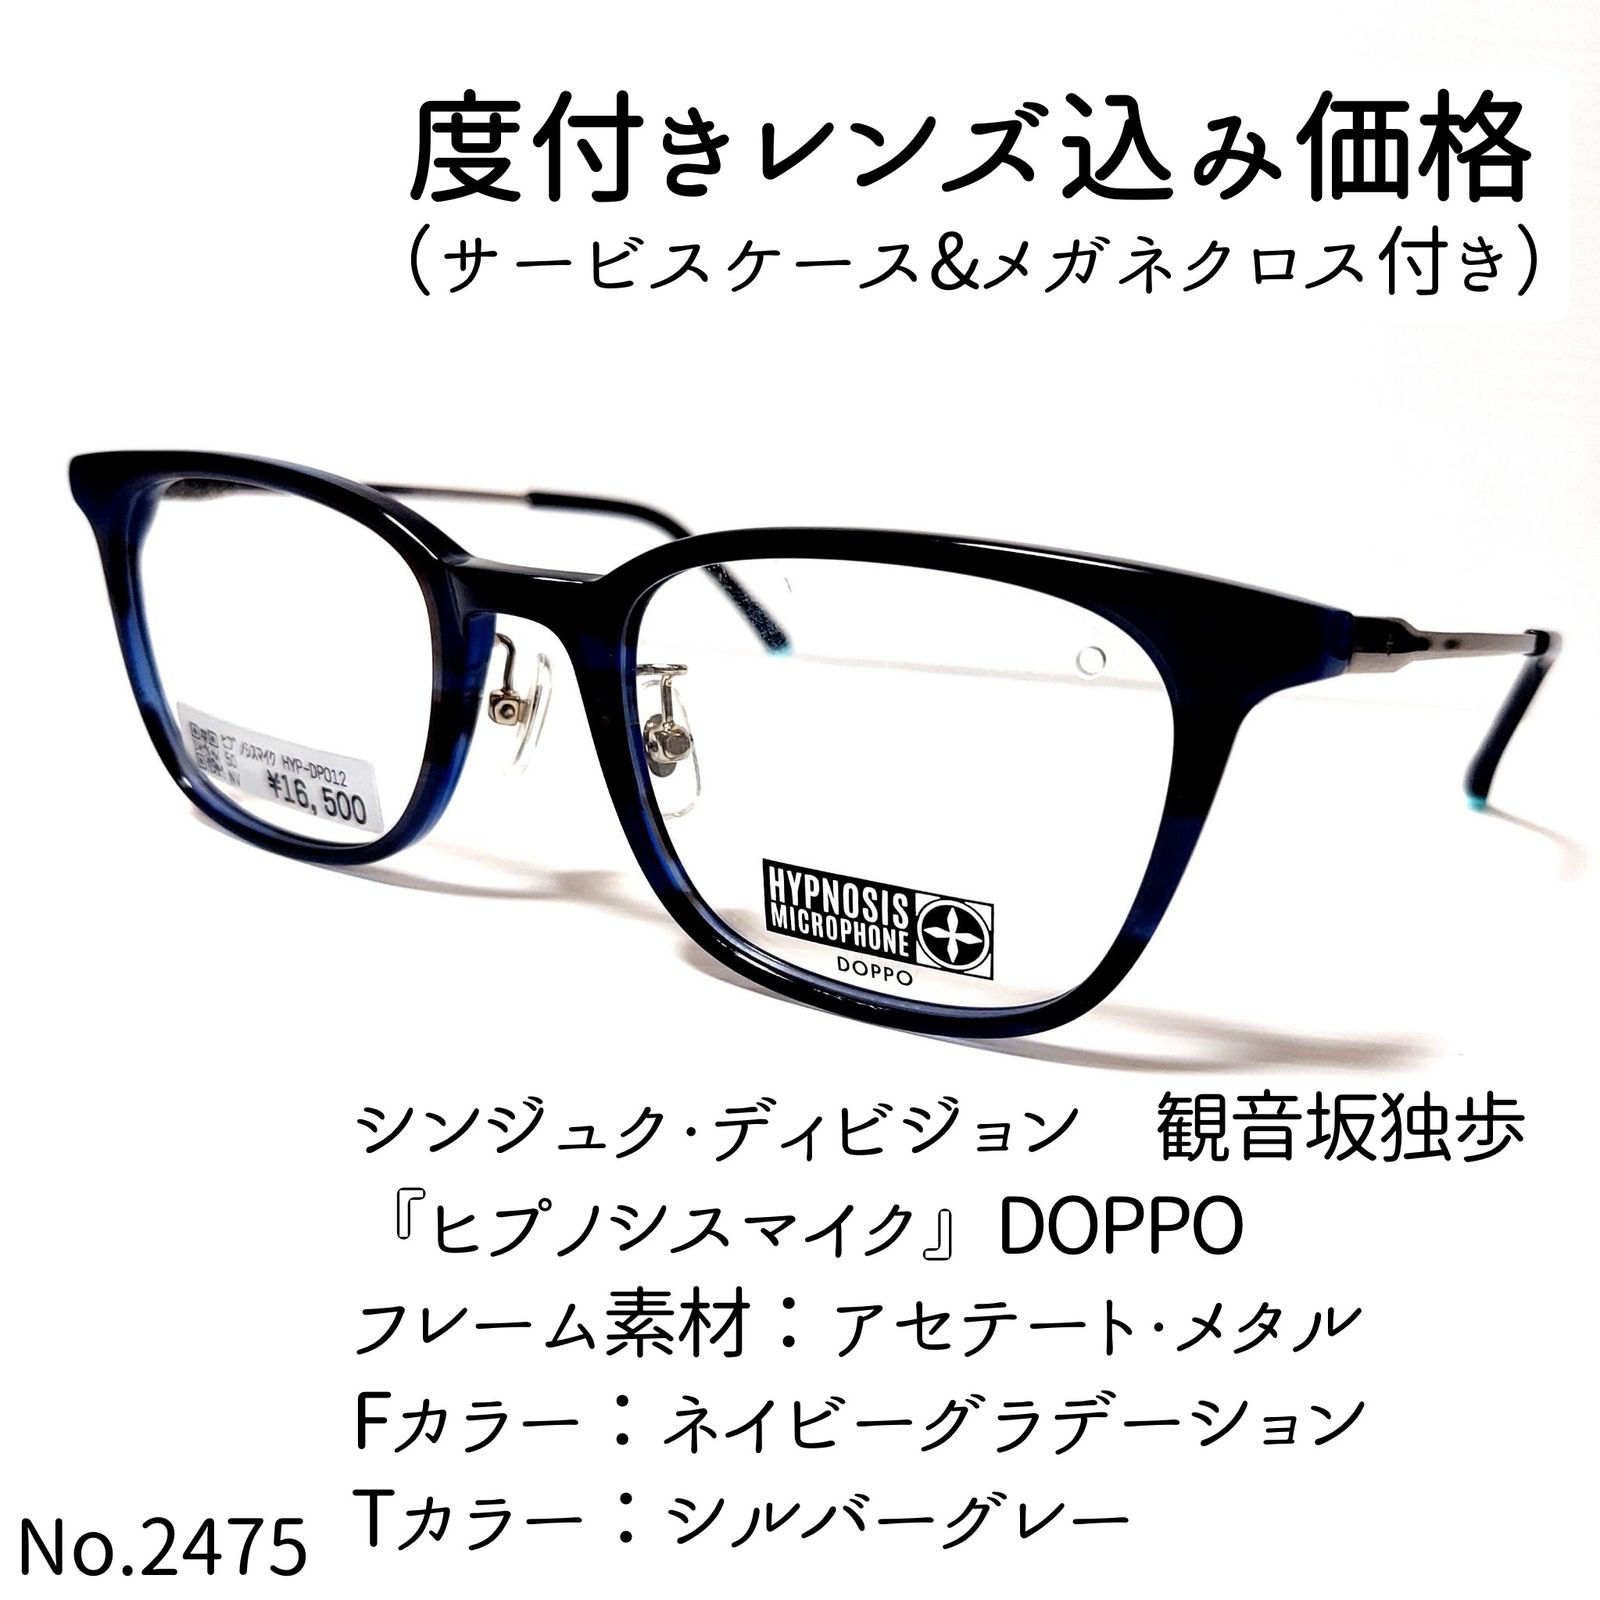 No.2475+メガネ 『ヒプノシスマイク』DOPPO【度数入り込み価格】-